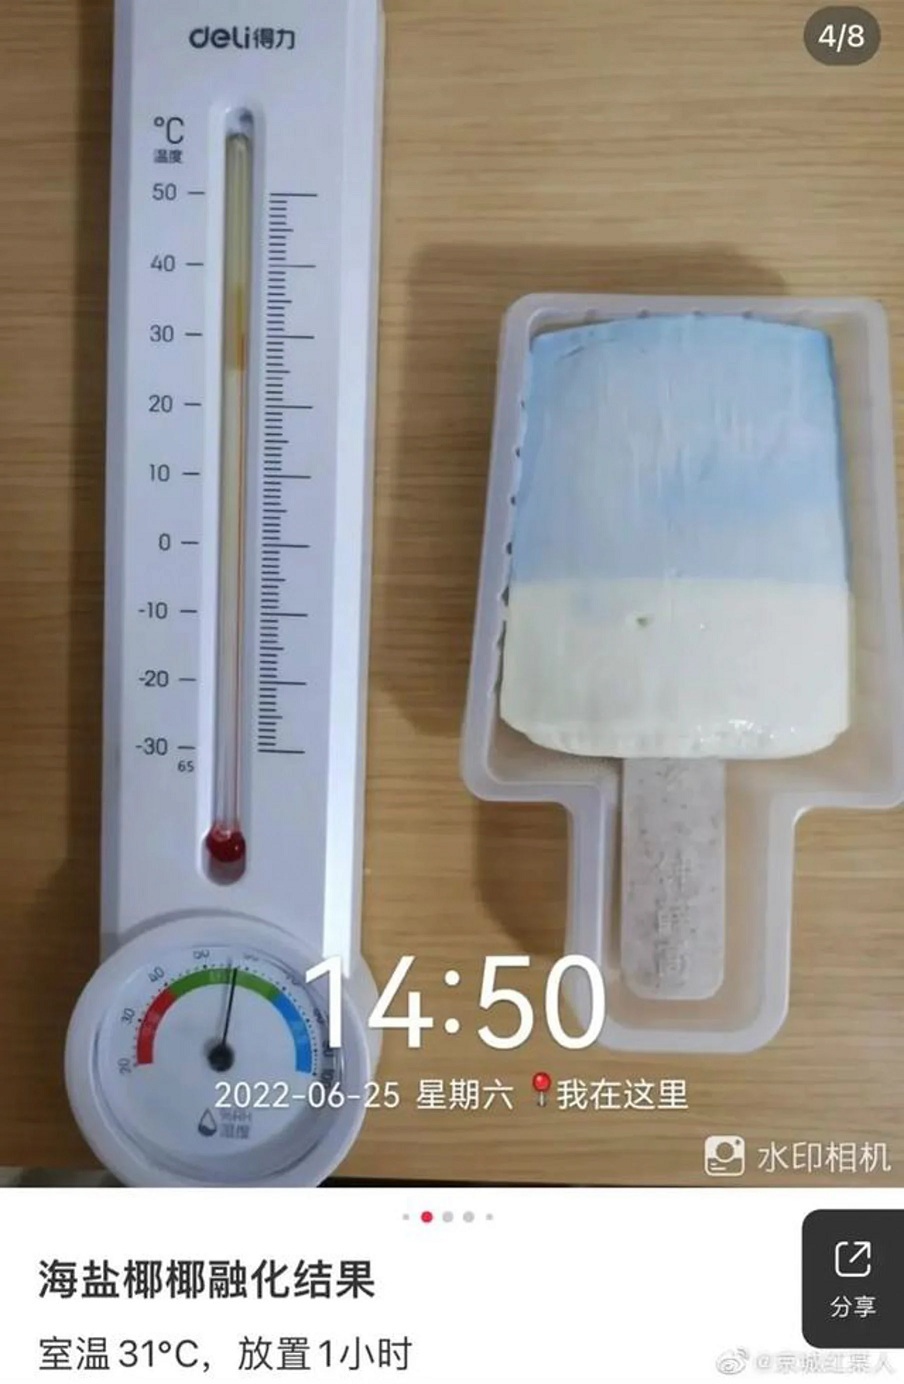 Loại kem đắt tiền của Trung Quốc không chảy ở nhiệt độ trên 30 độ C gây hoảng